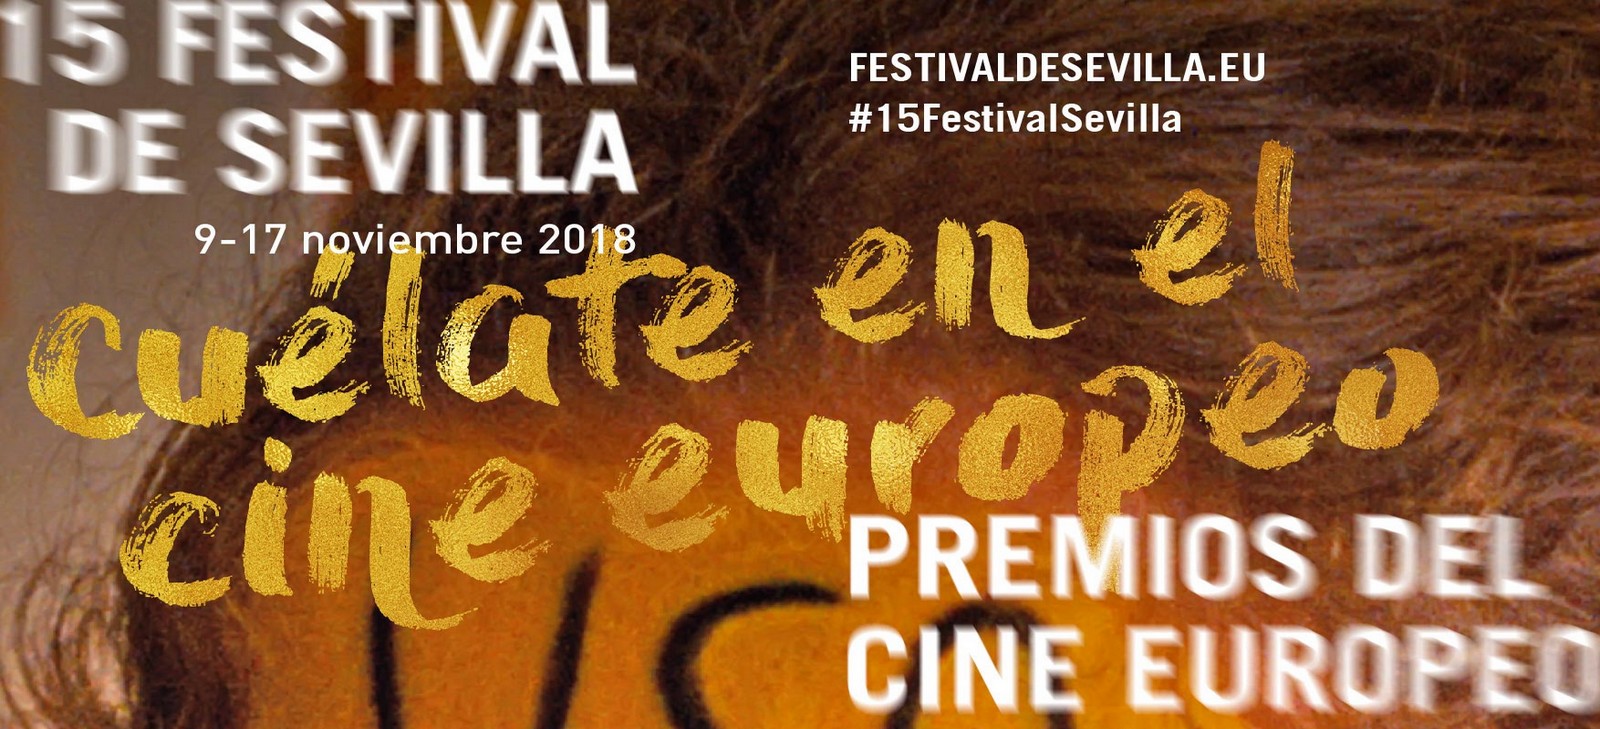 Détail de l'affiche du 15e festival de Séville dédié au cinéma européen